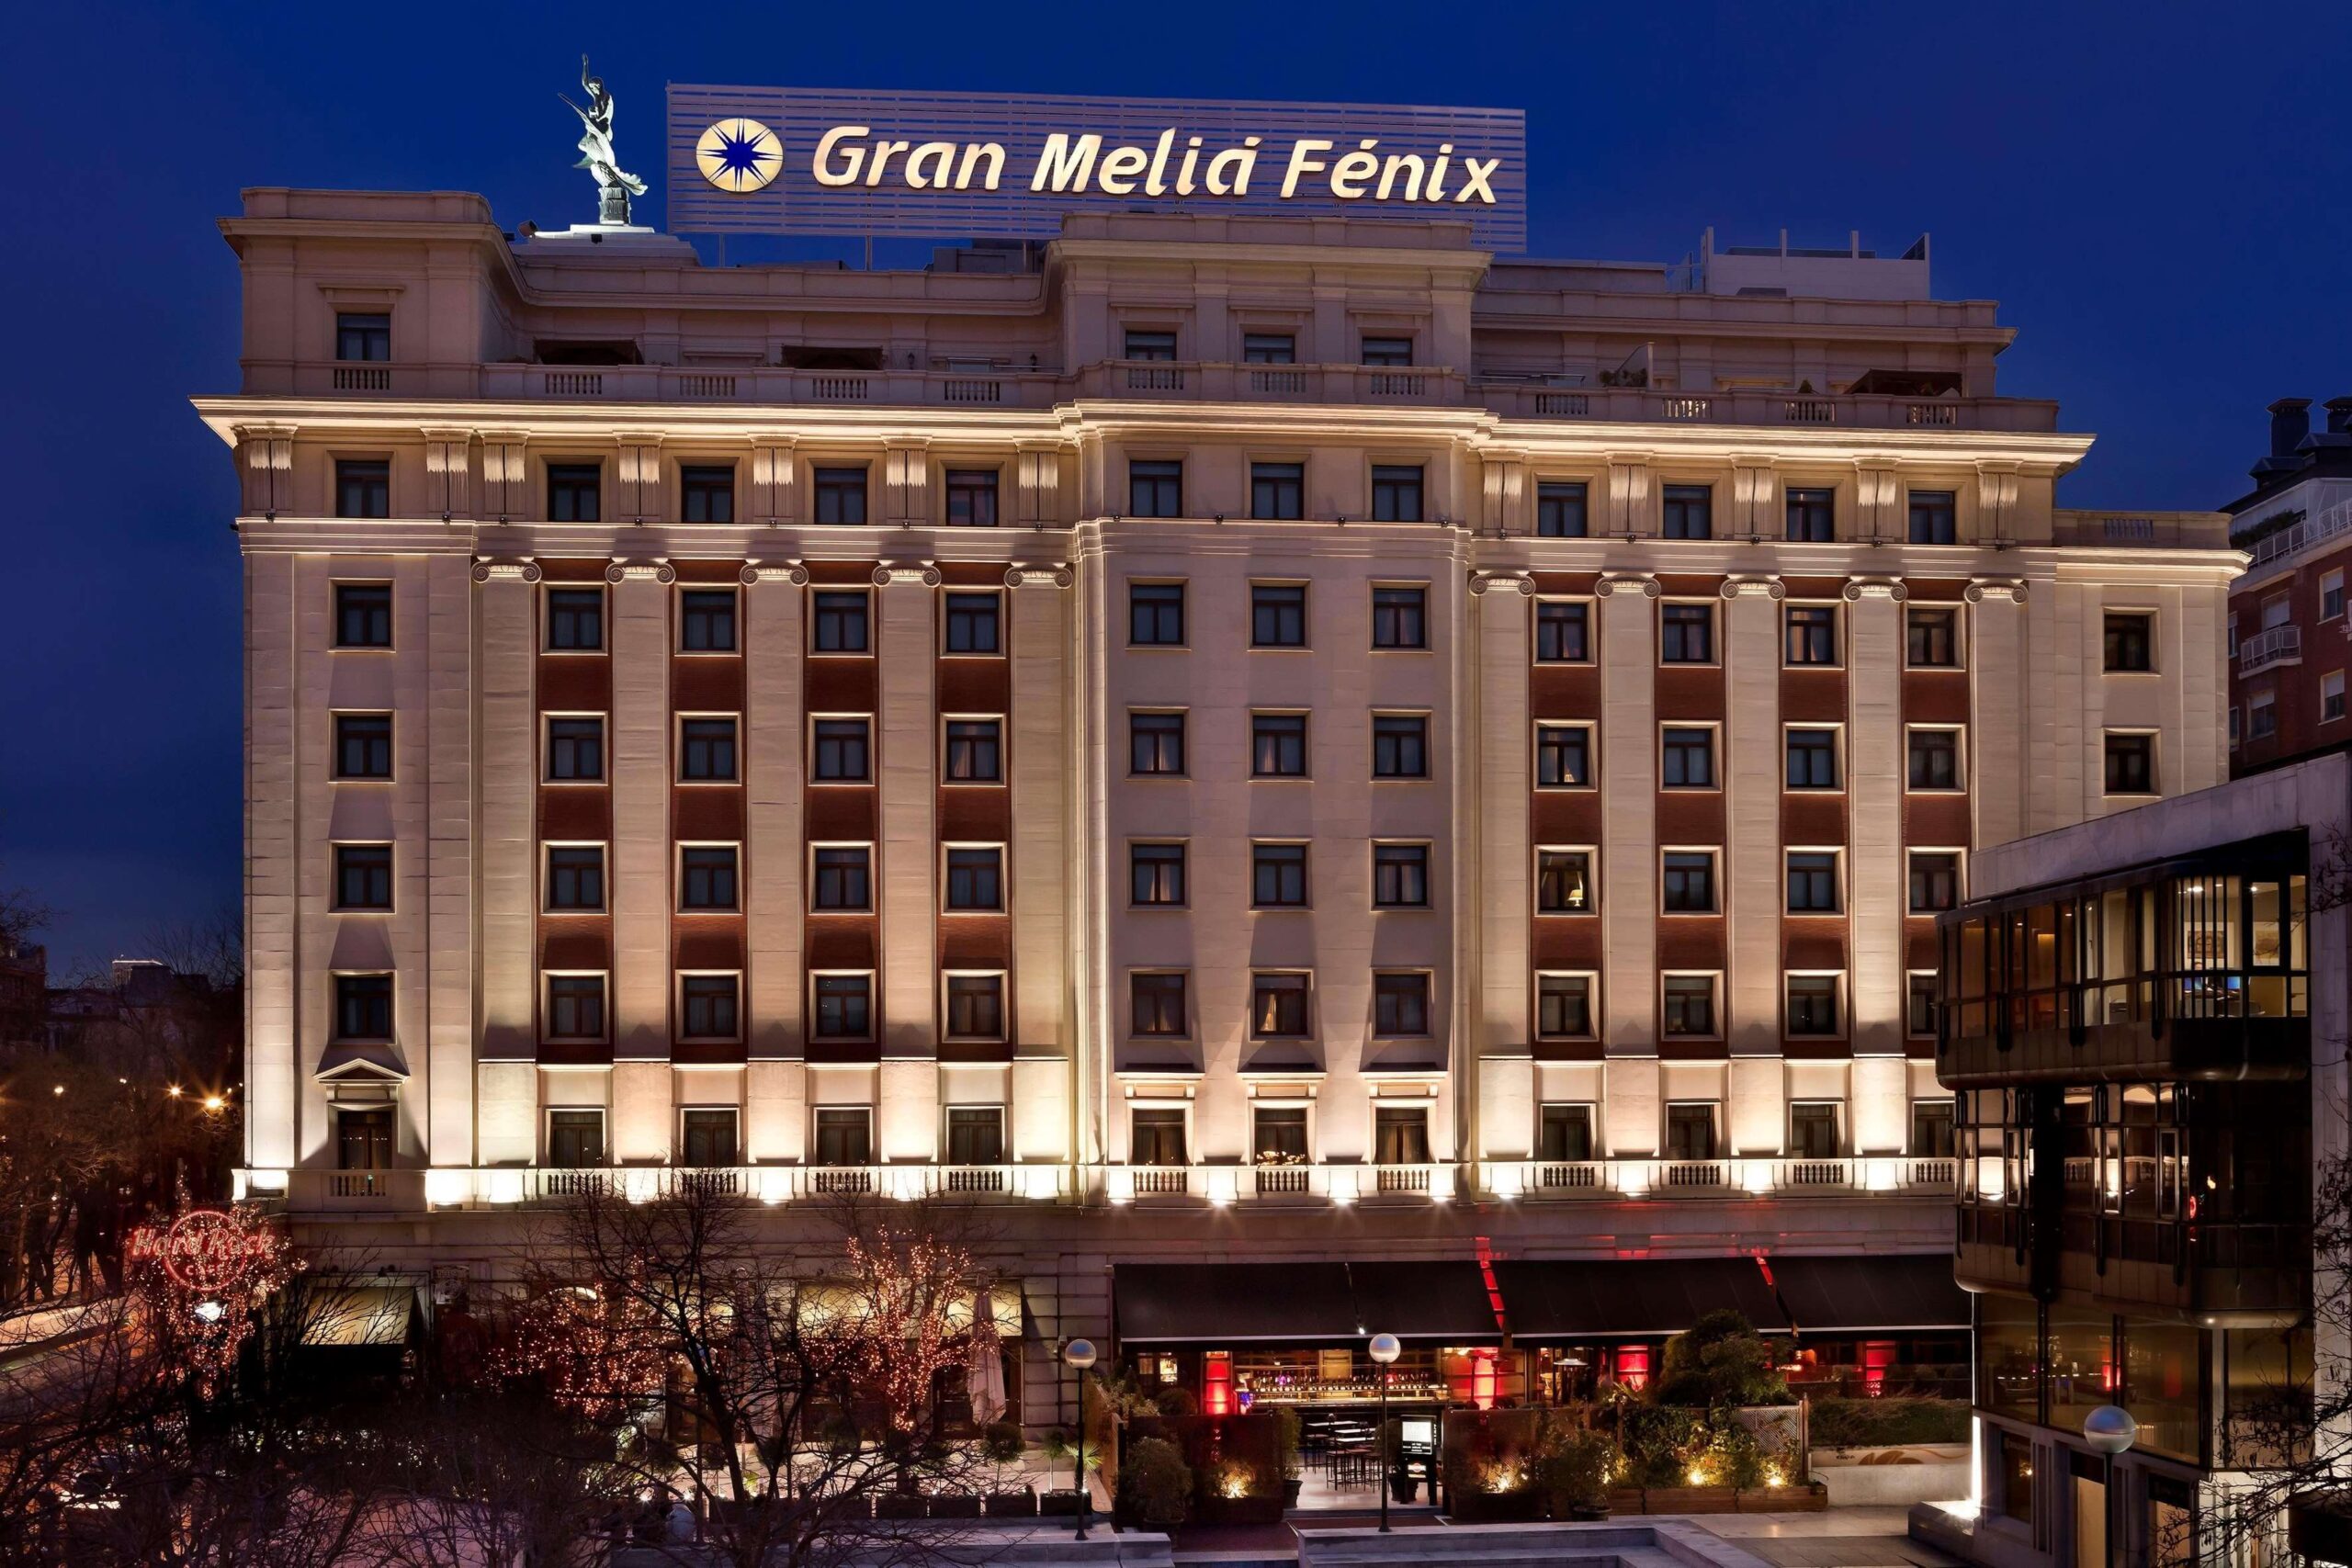 هتل گران ملیا فن ثرومپ از هتل های معروف اسپانیا